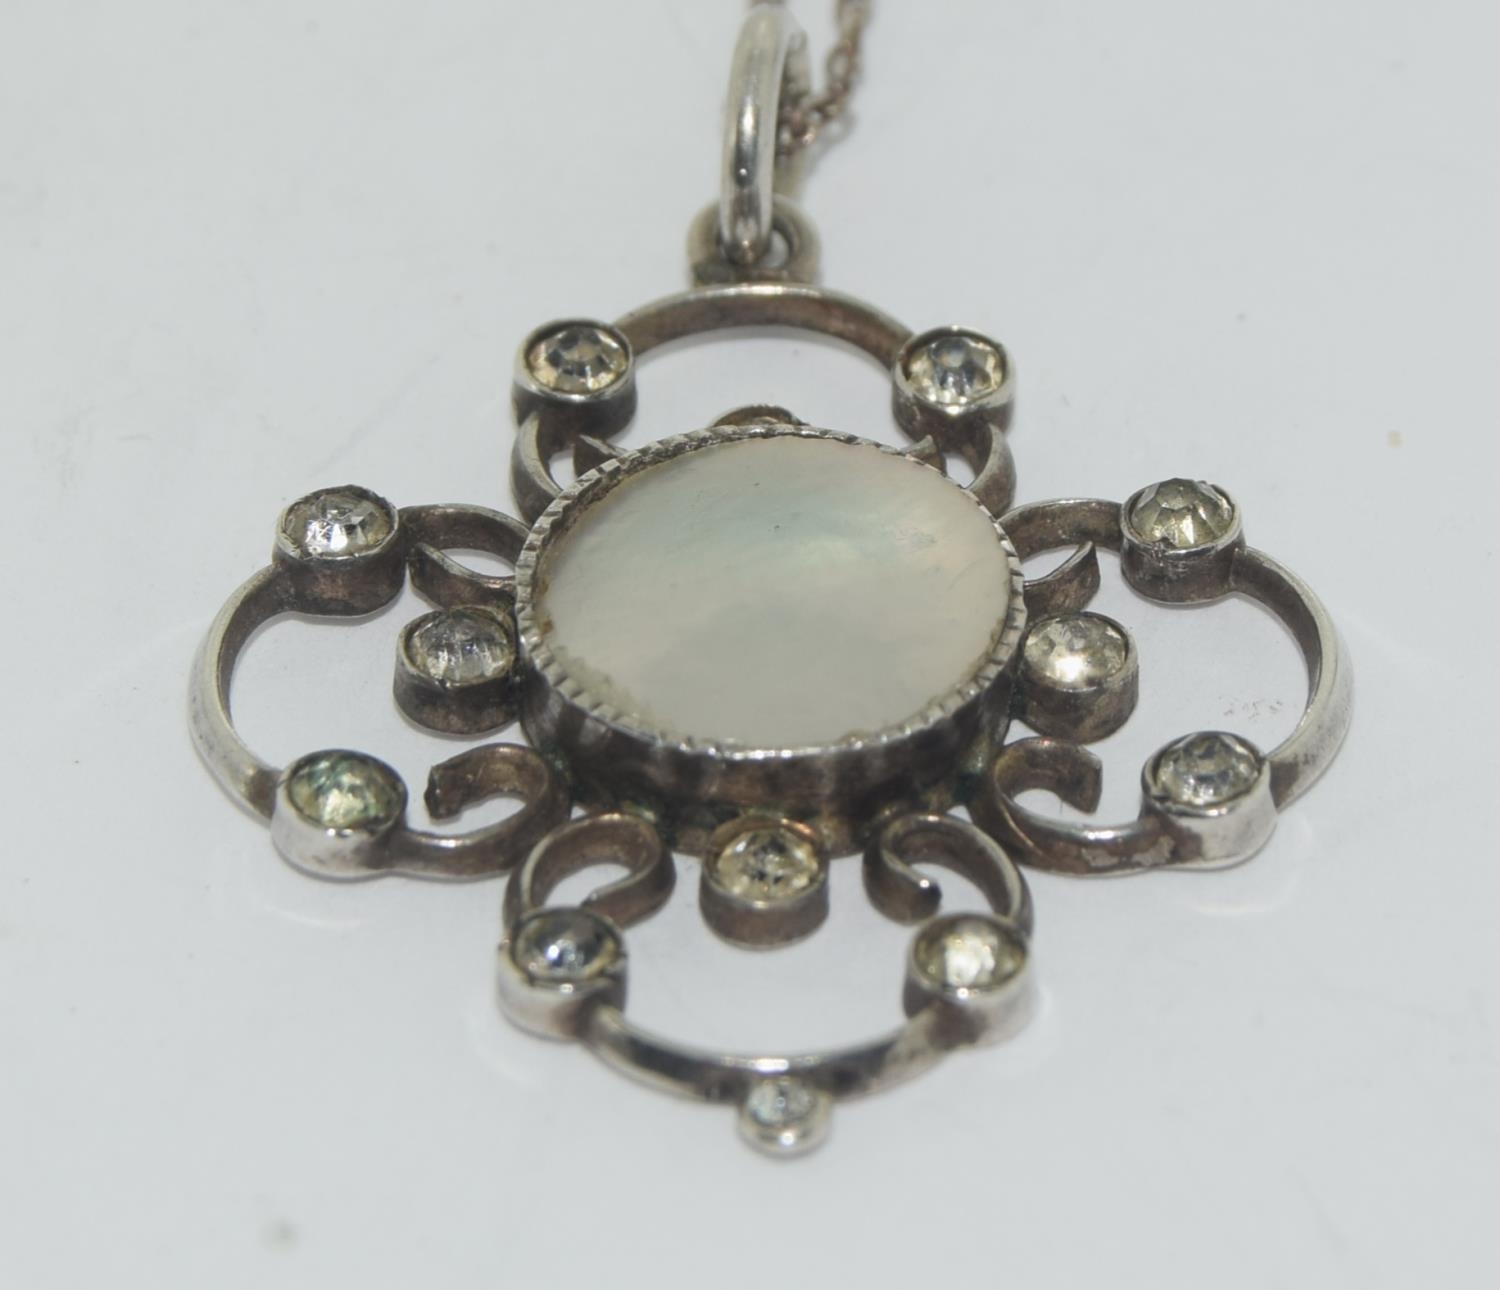 Genuine Art Nouveau Mother of Pearl Lavaliere pendant.